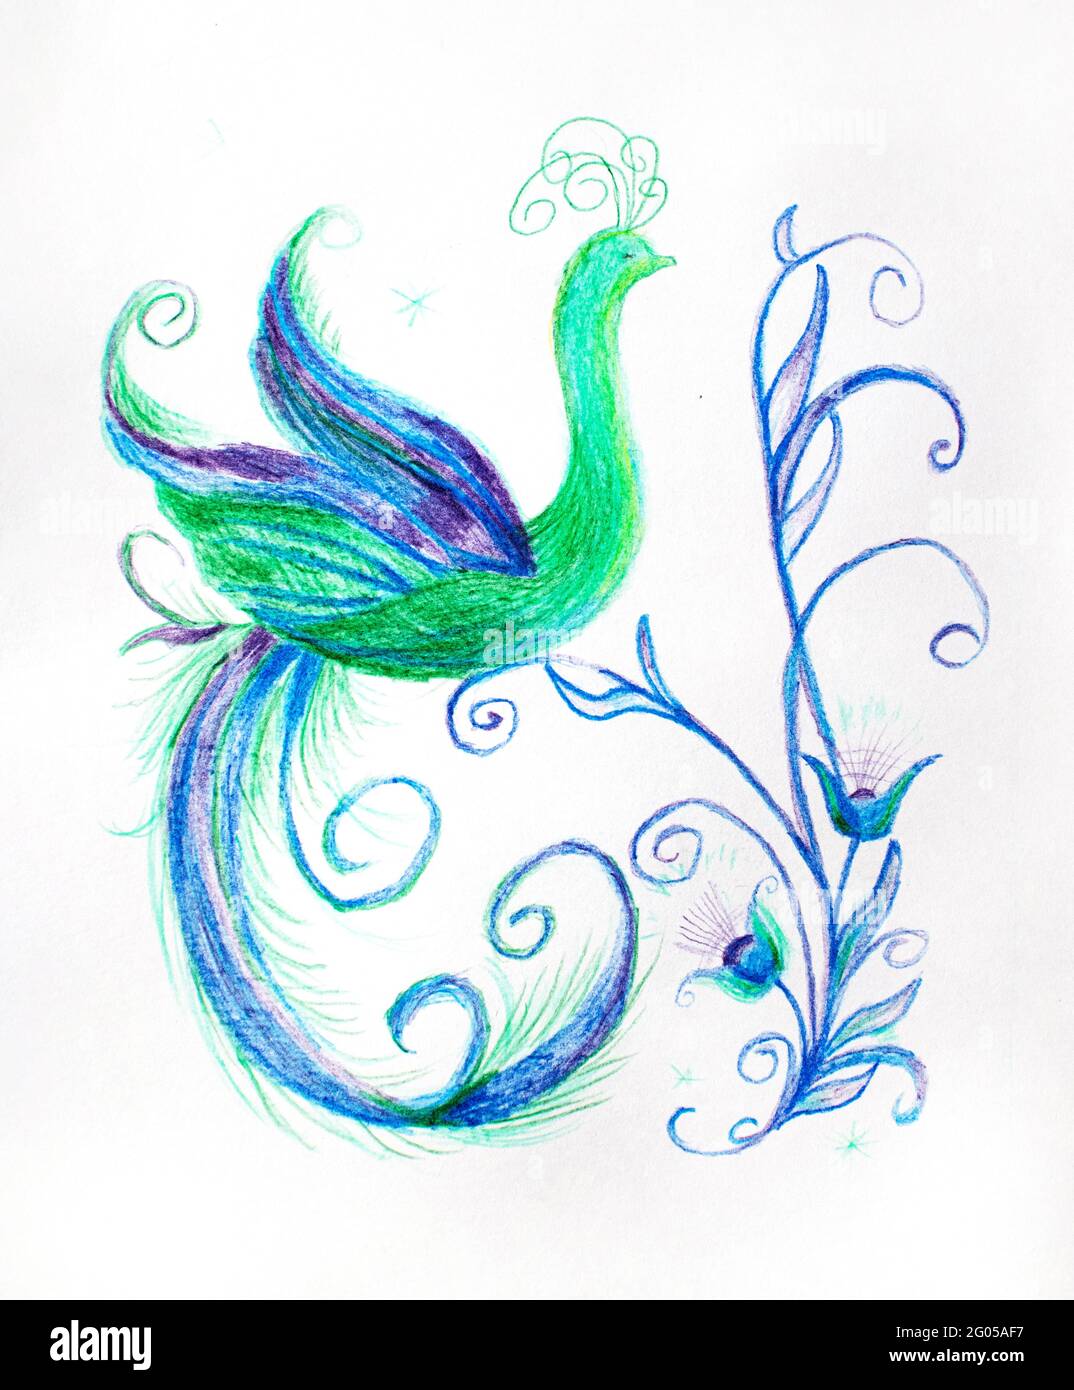 Magnifique Firebird avec une queue de conte de fées. Phoenix. Oiseau mythique. Illustration. Banque D'Images